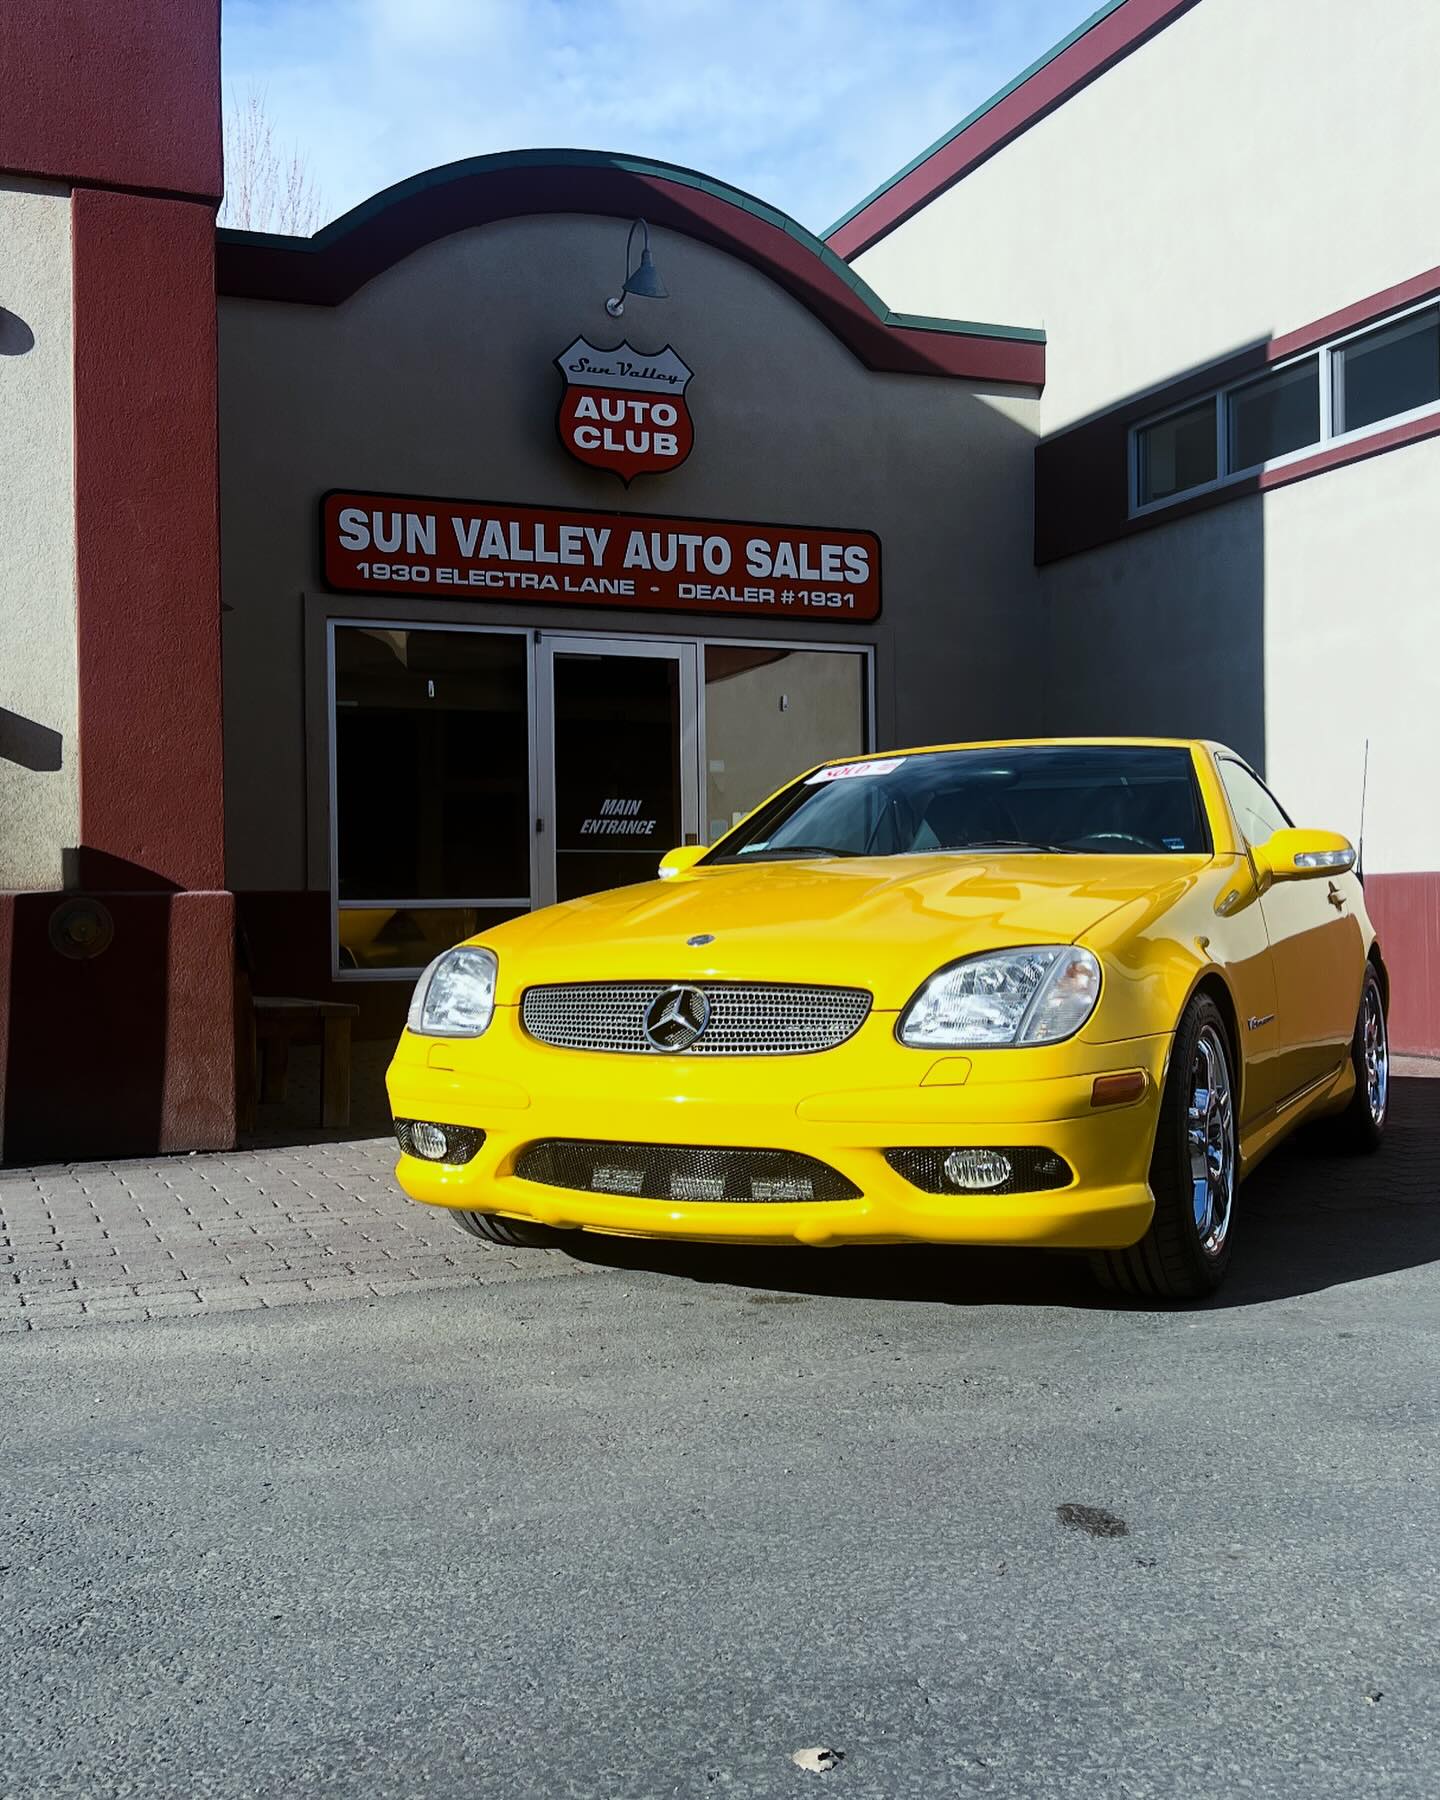 Sun Valley Auto Sales